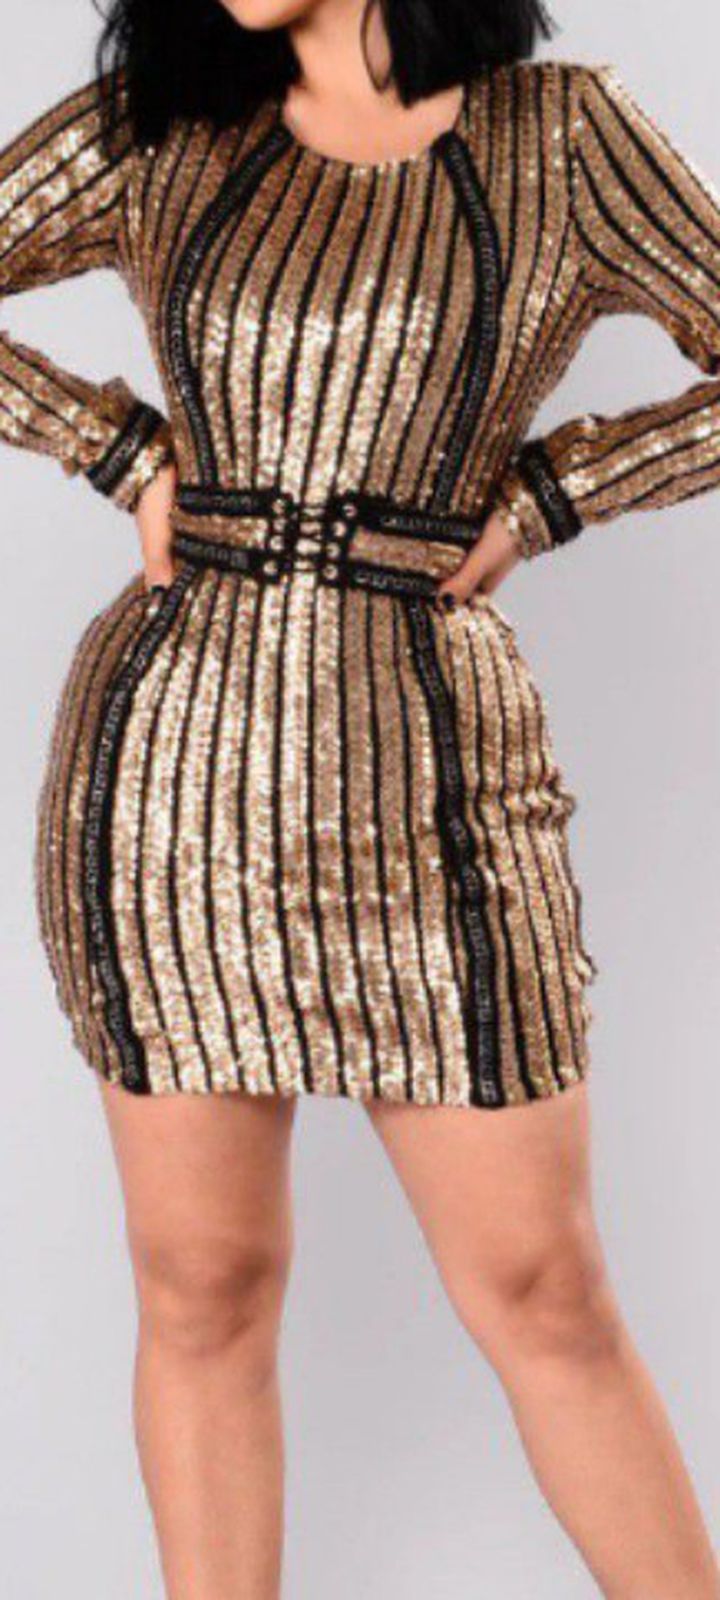 Fashion Nova Gold Sequins Dress